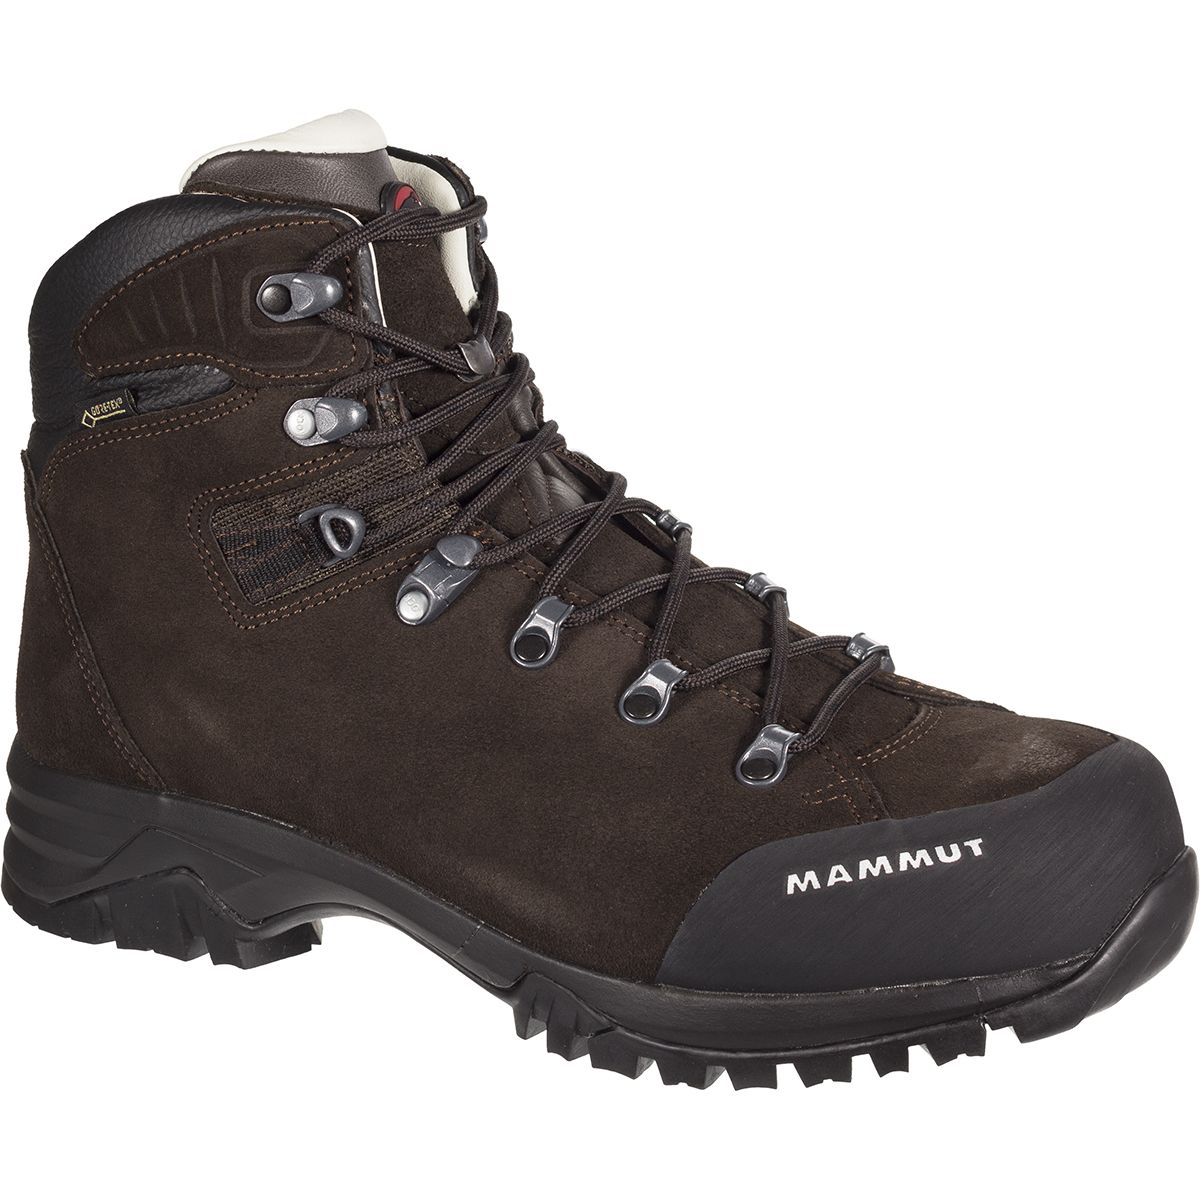 Mammut Trovat High GTX Hiking Boot - Men's - Footwear